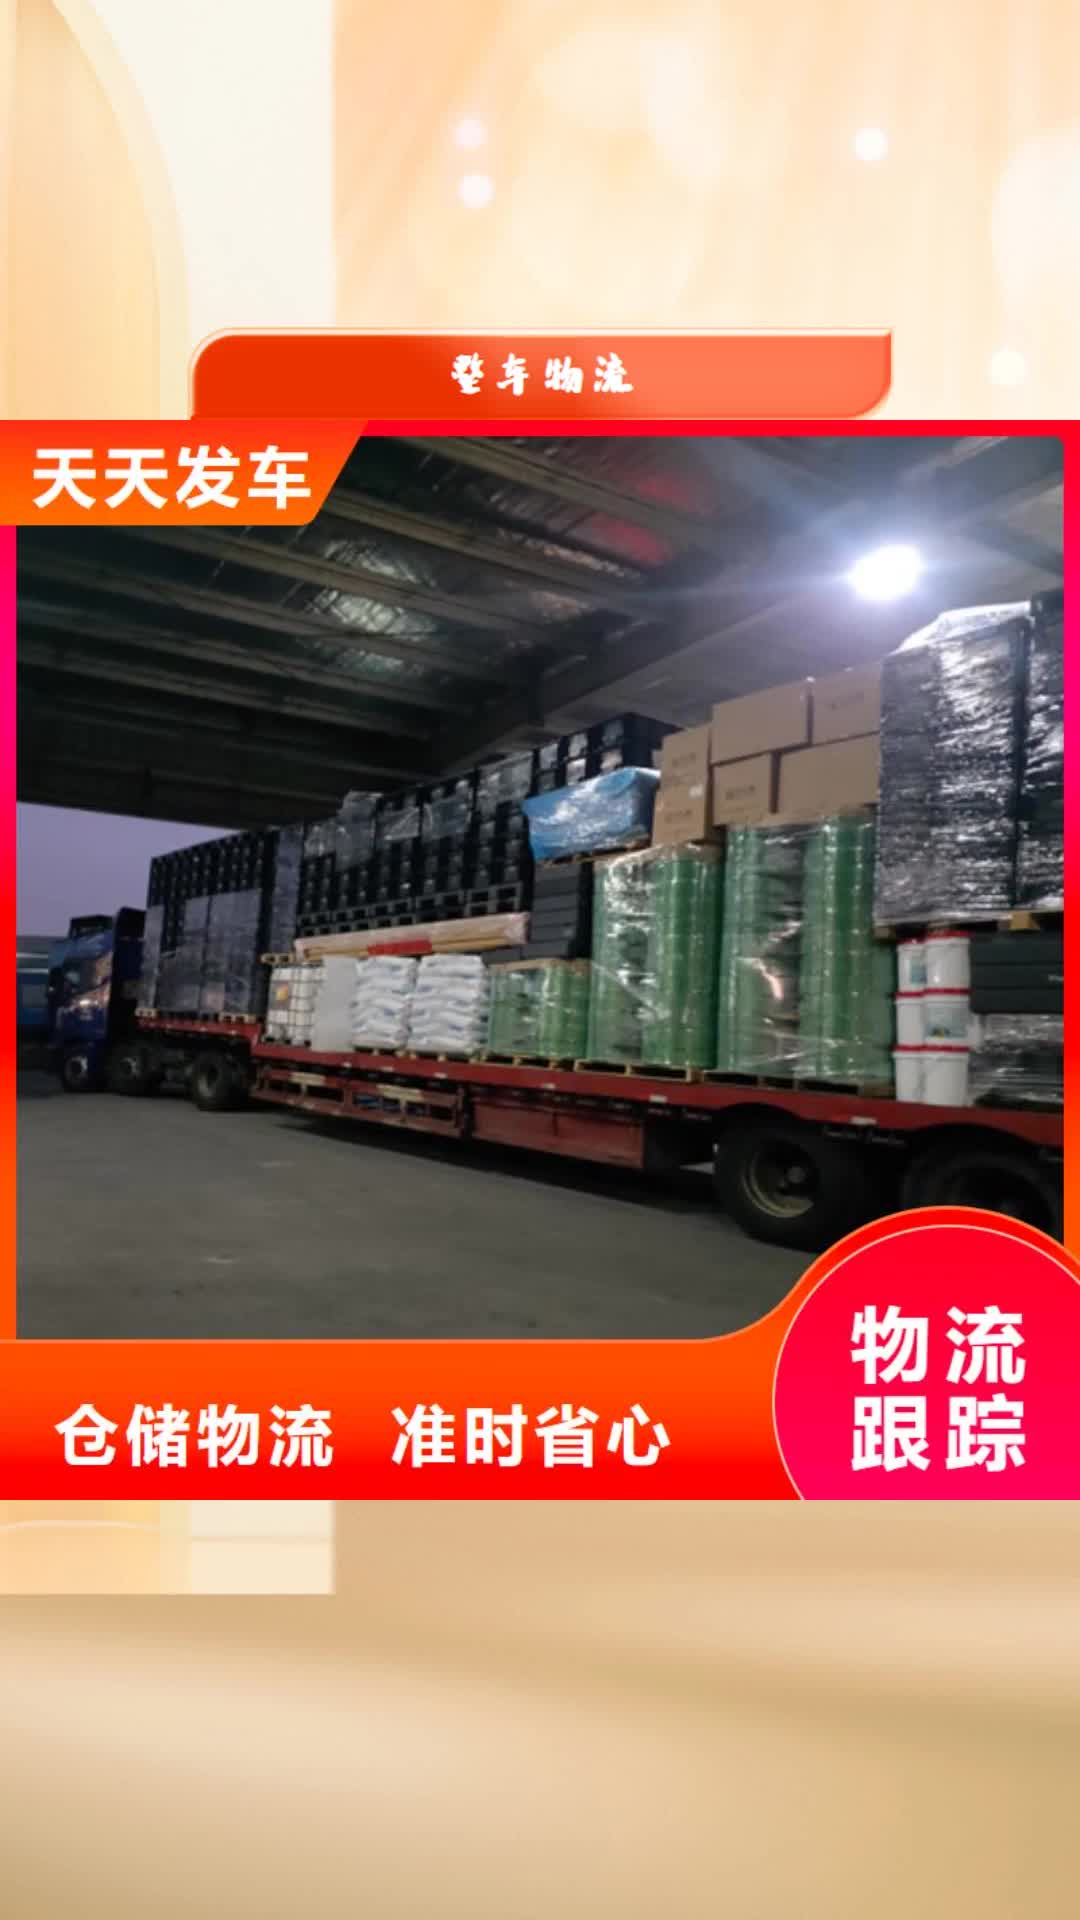 海西【整车物流】,上海到海西长途物流搬家仓储配送